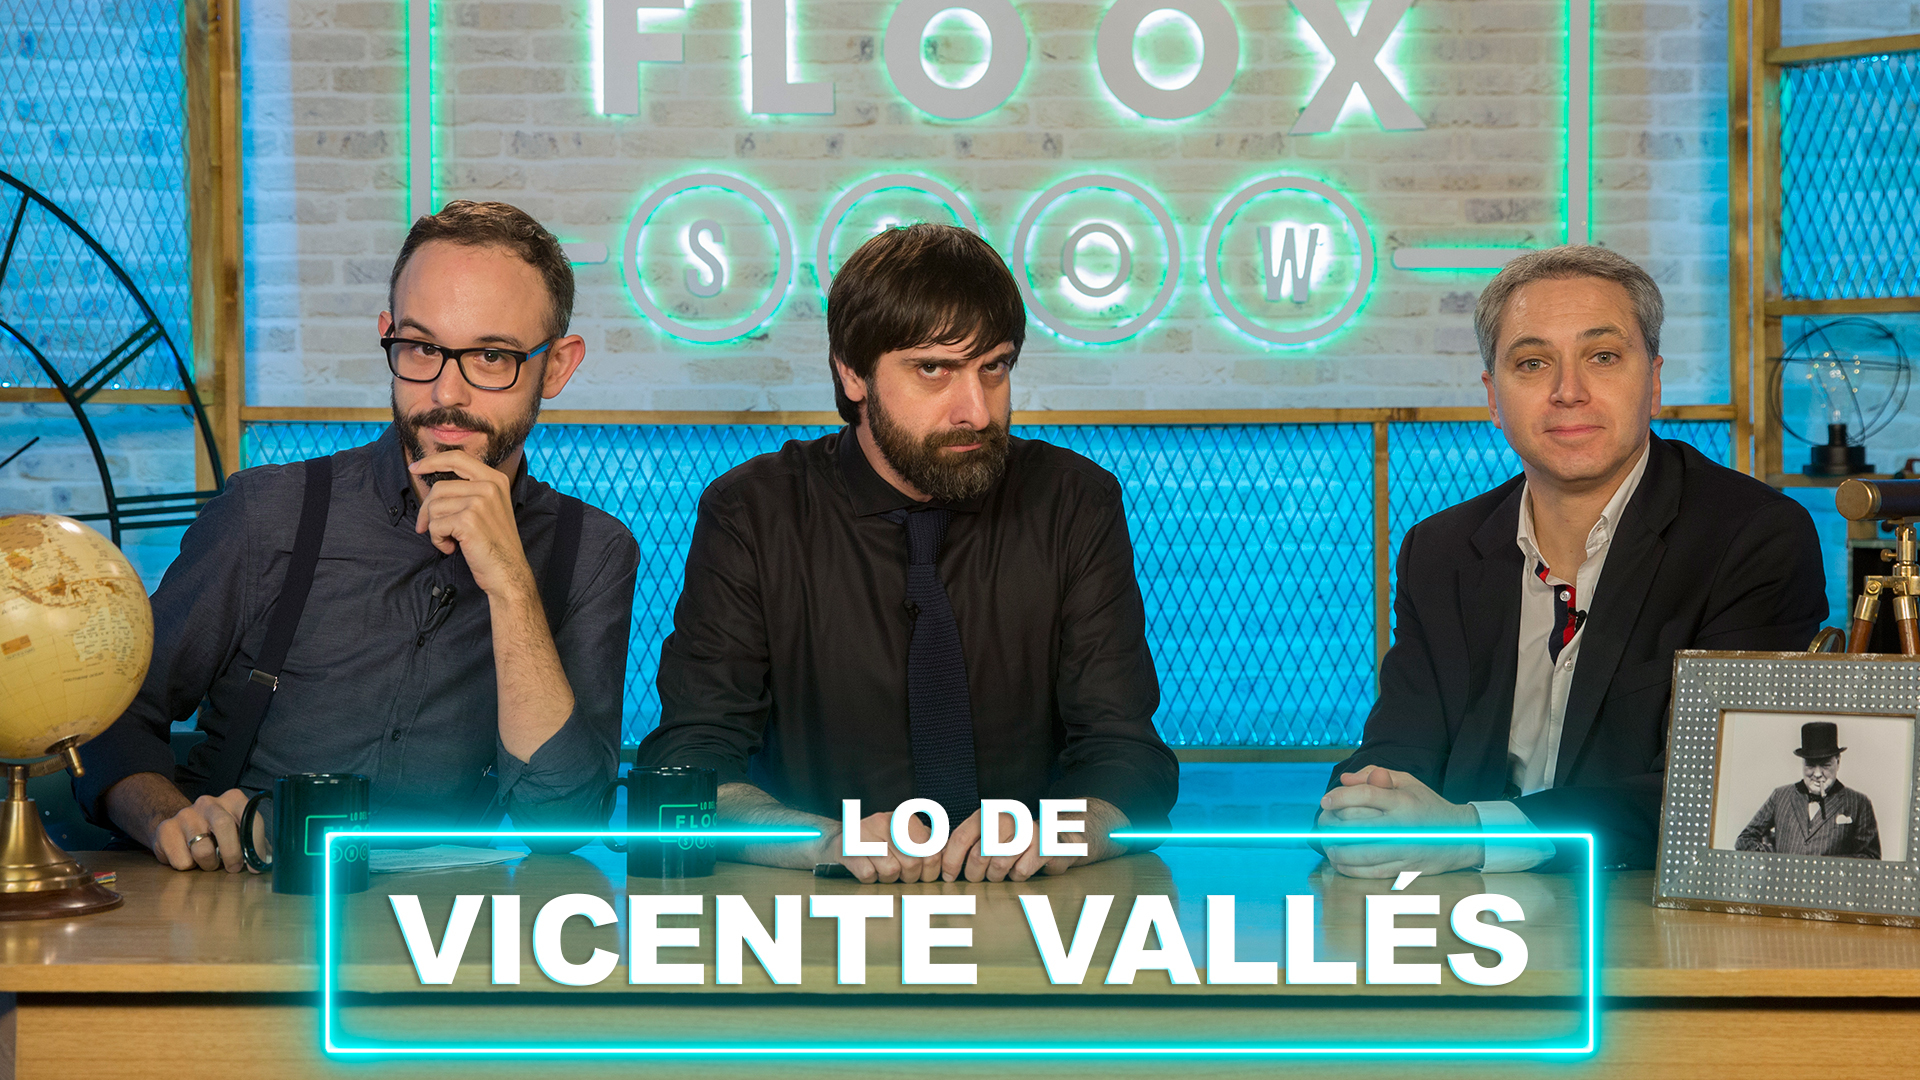 Temporada 1 Vicente Vallés y lo de los informativos